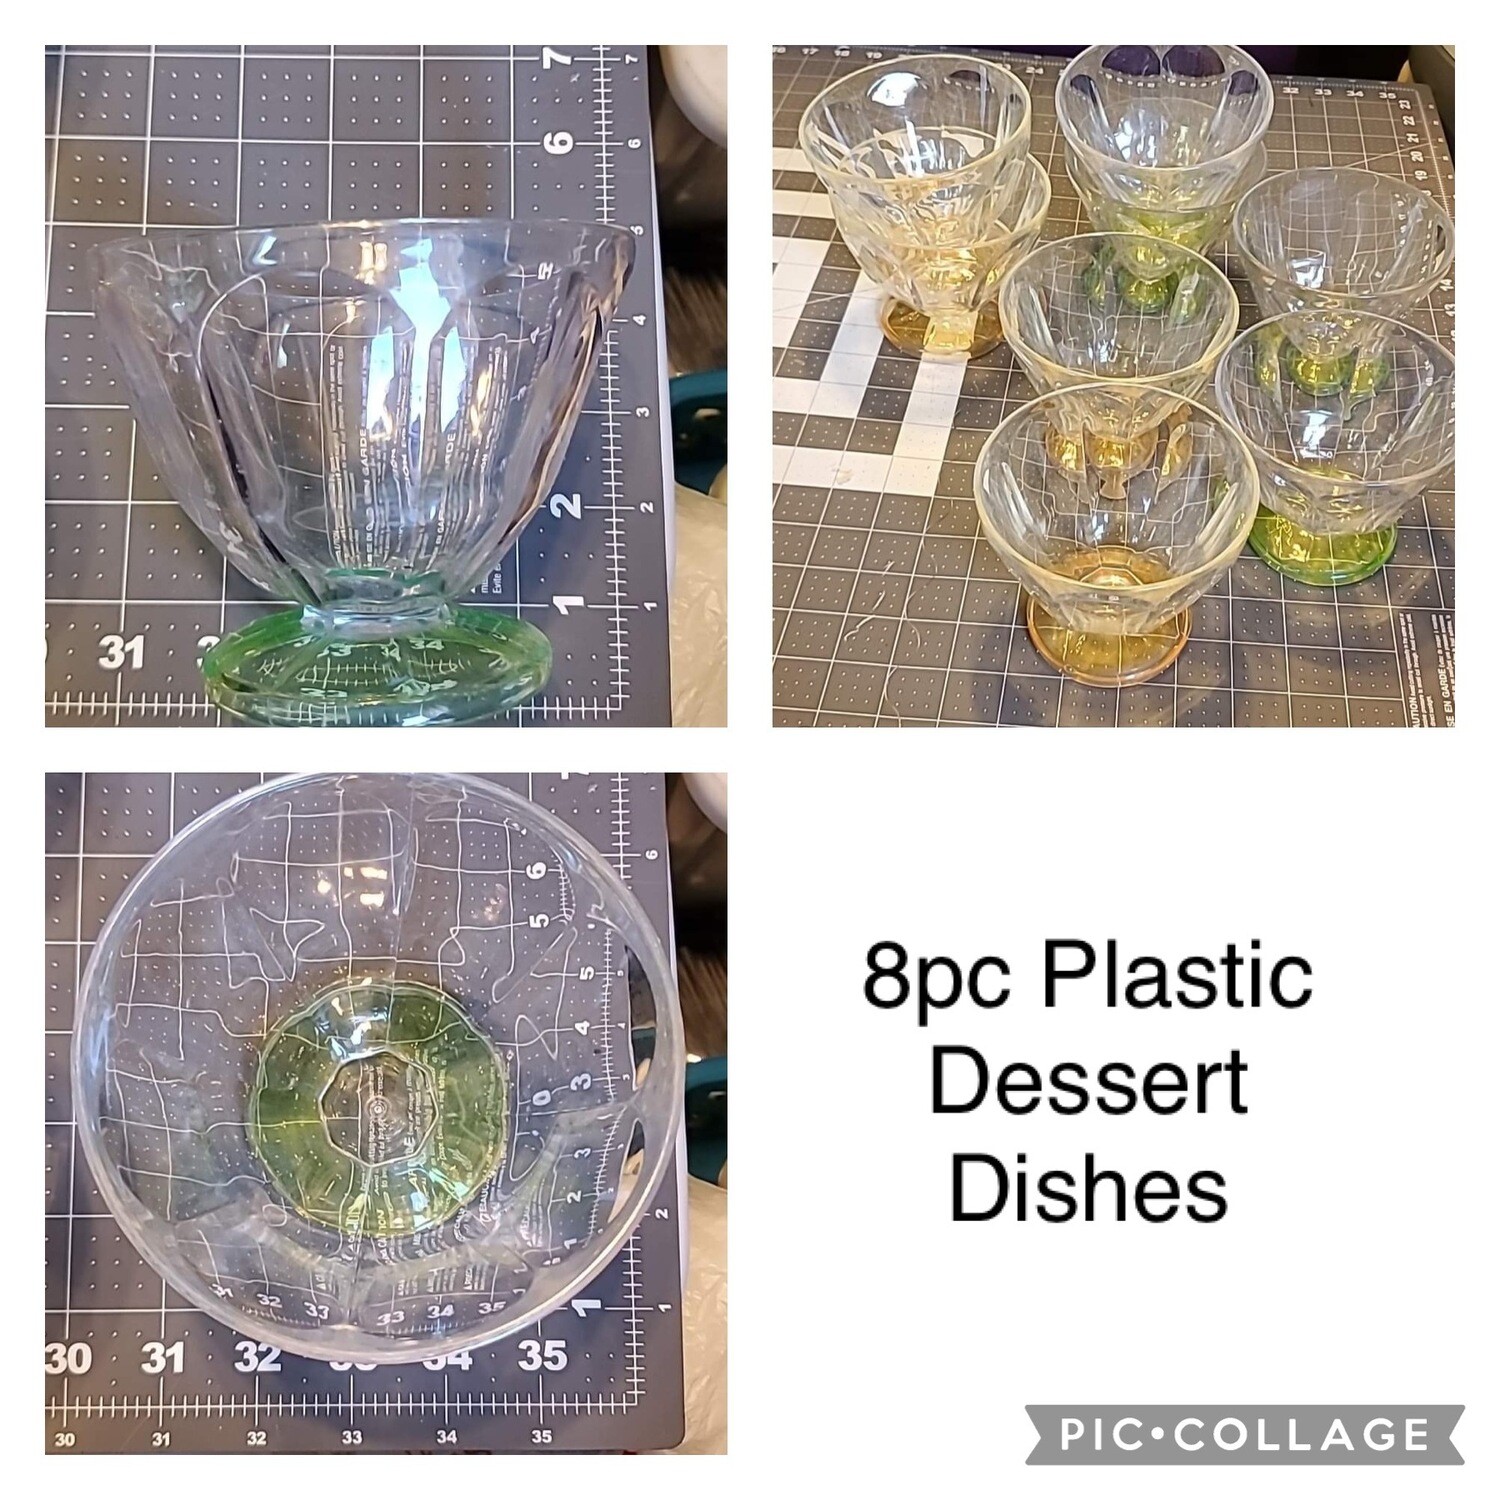 8pc Plastic Dessert